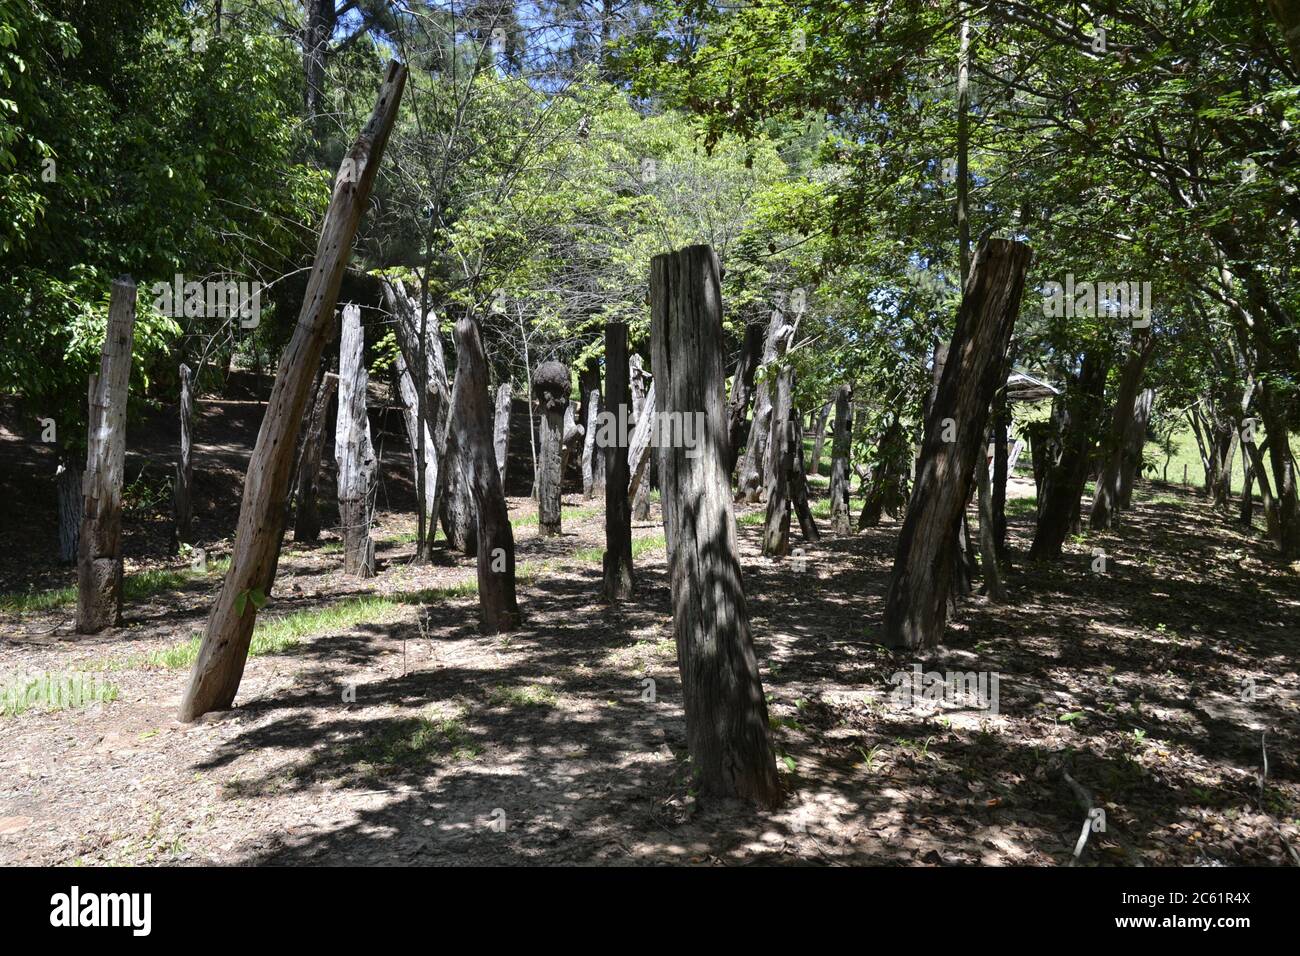 Bosque de troncos o trunca, en granja de ecoturismo, en el interior de Brasil, mostrando troncos de árboles y vegetación, Brasil, Sudamérica Foto de stock